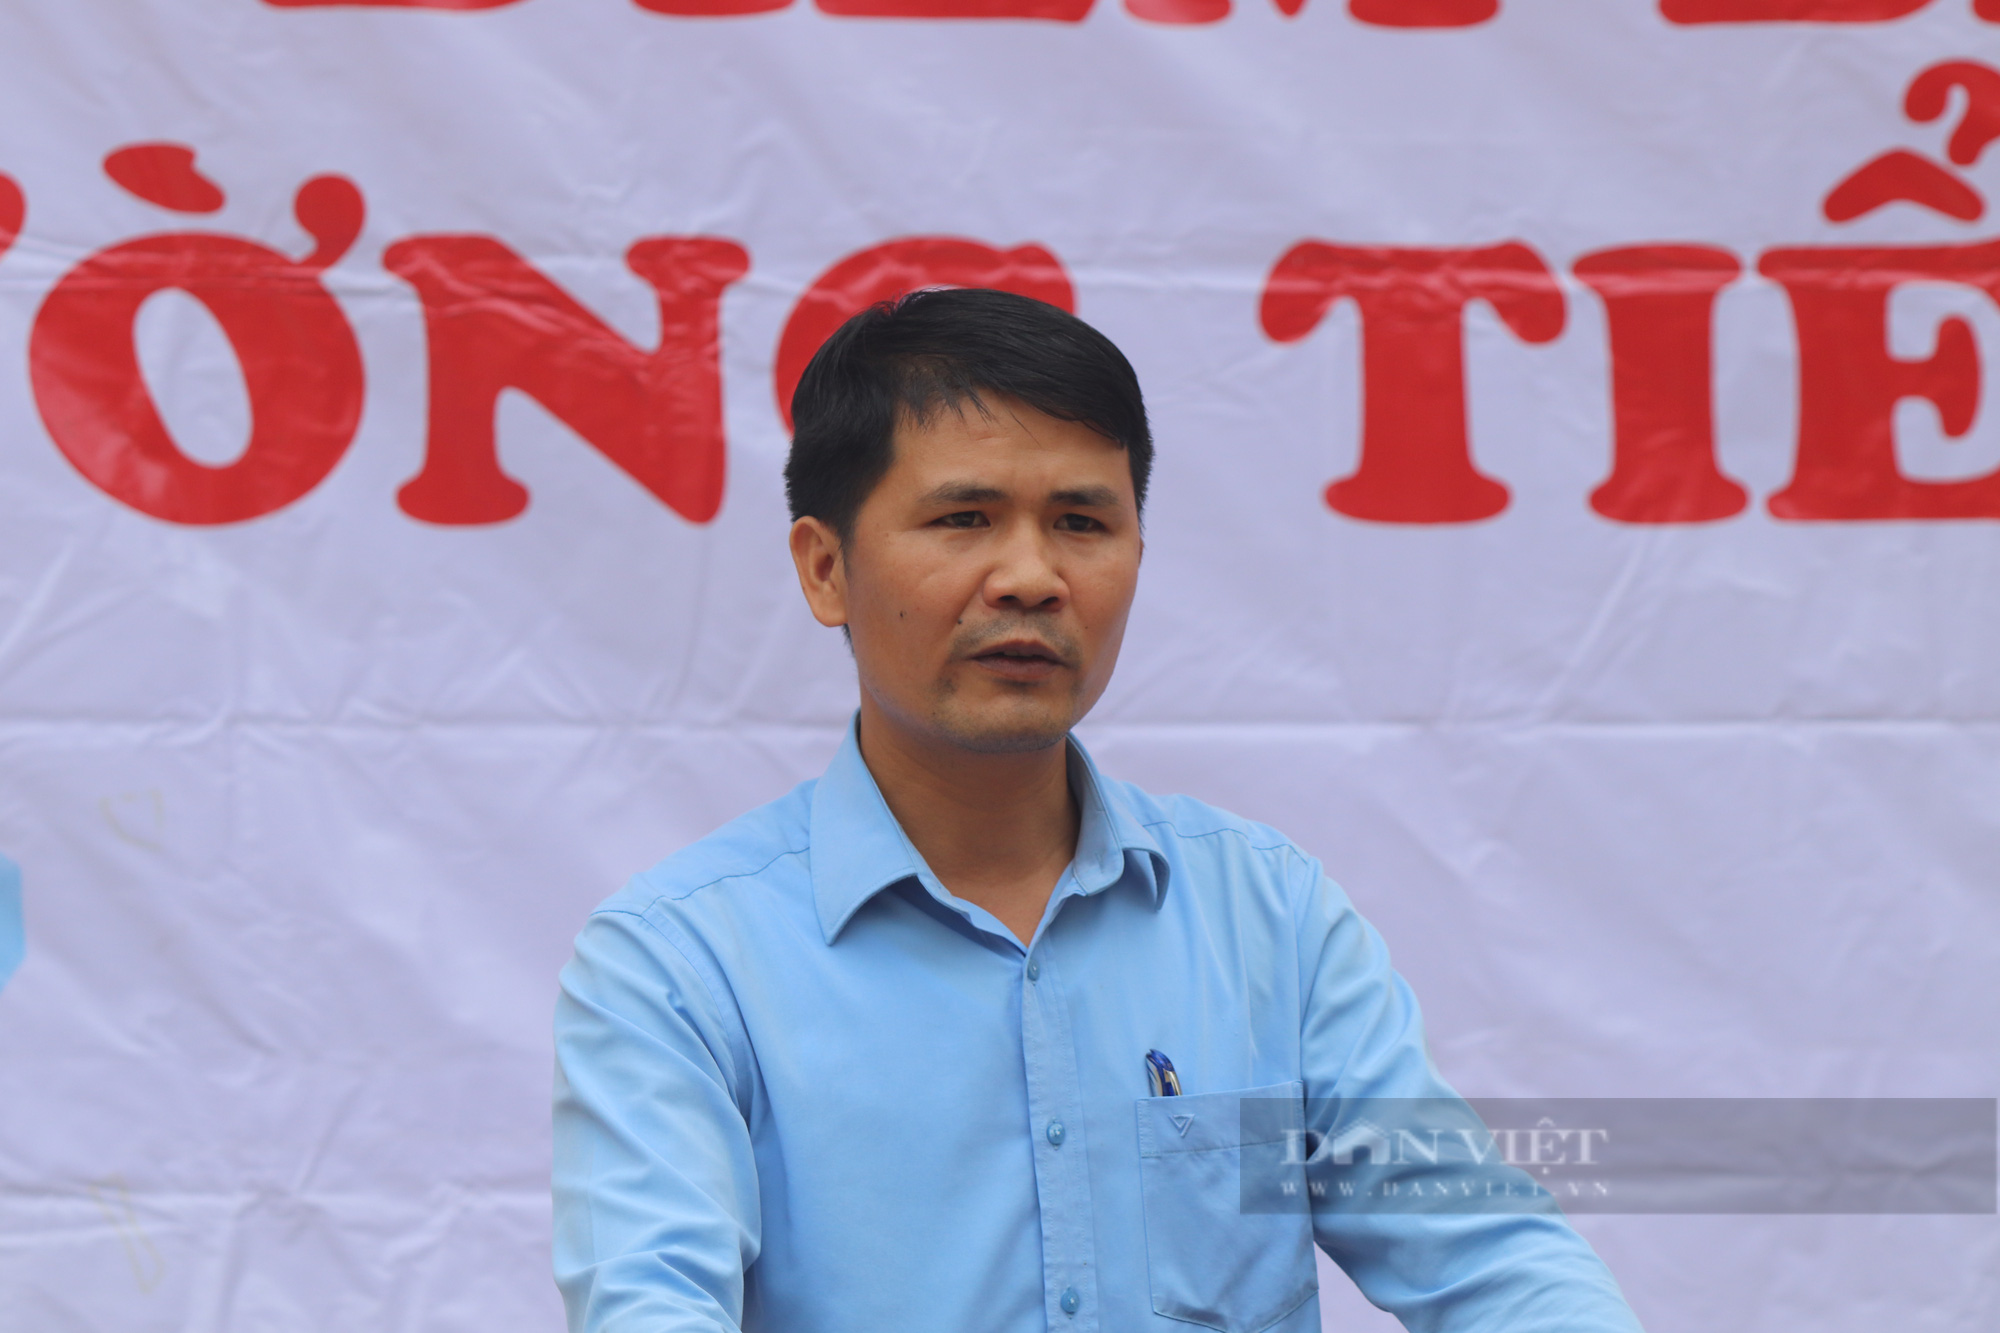 Báo NTNN/Dân Việt khởi công điểm trường mơ ước ở vùng quê nghèo Sơn La - Ảnh 5.